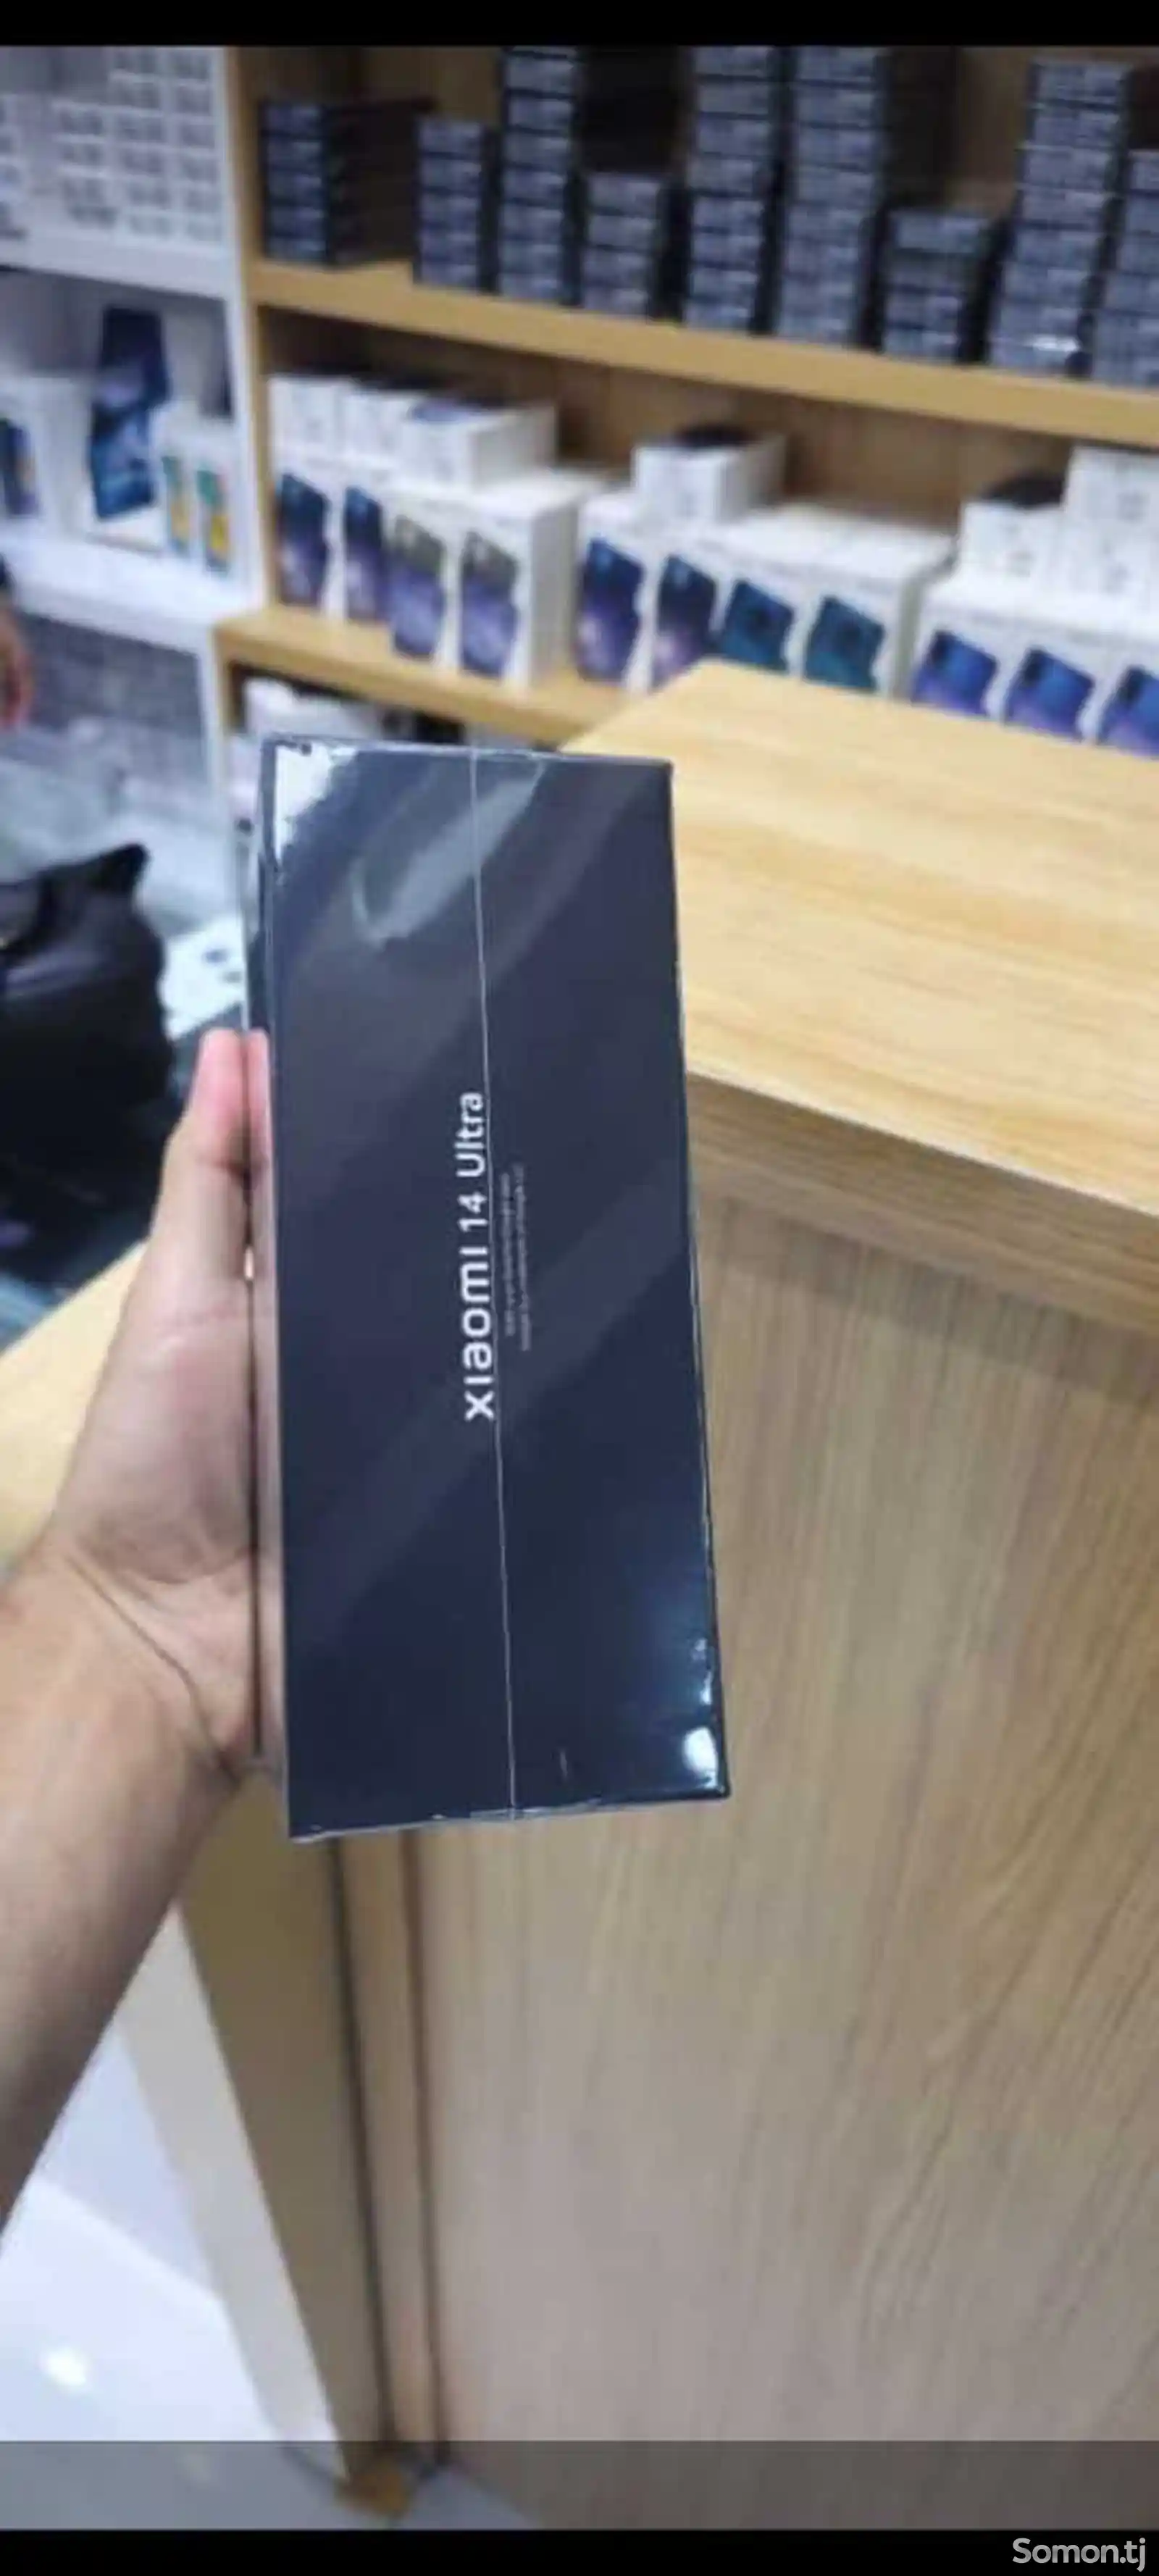 Xiaomi 14 ultra-4